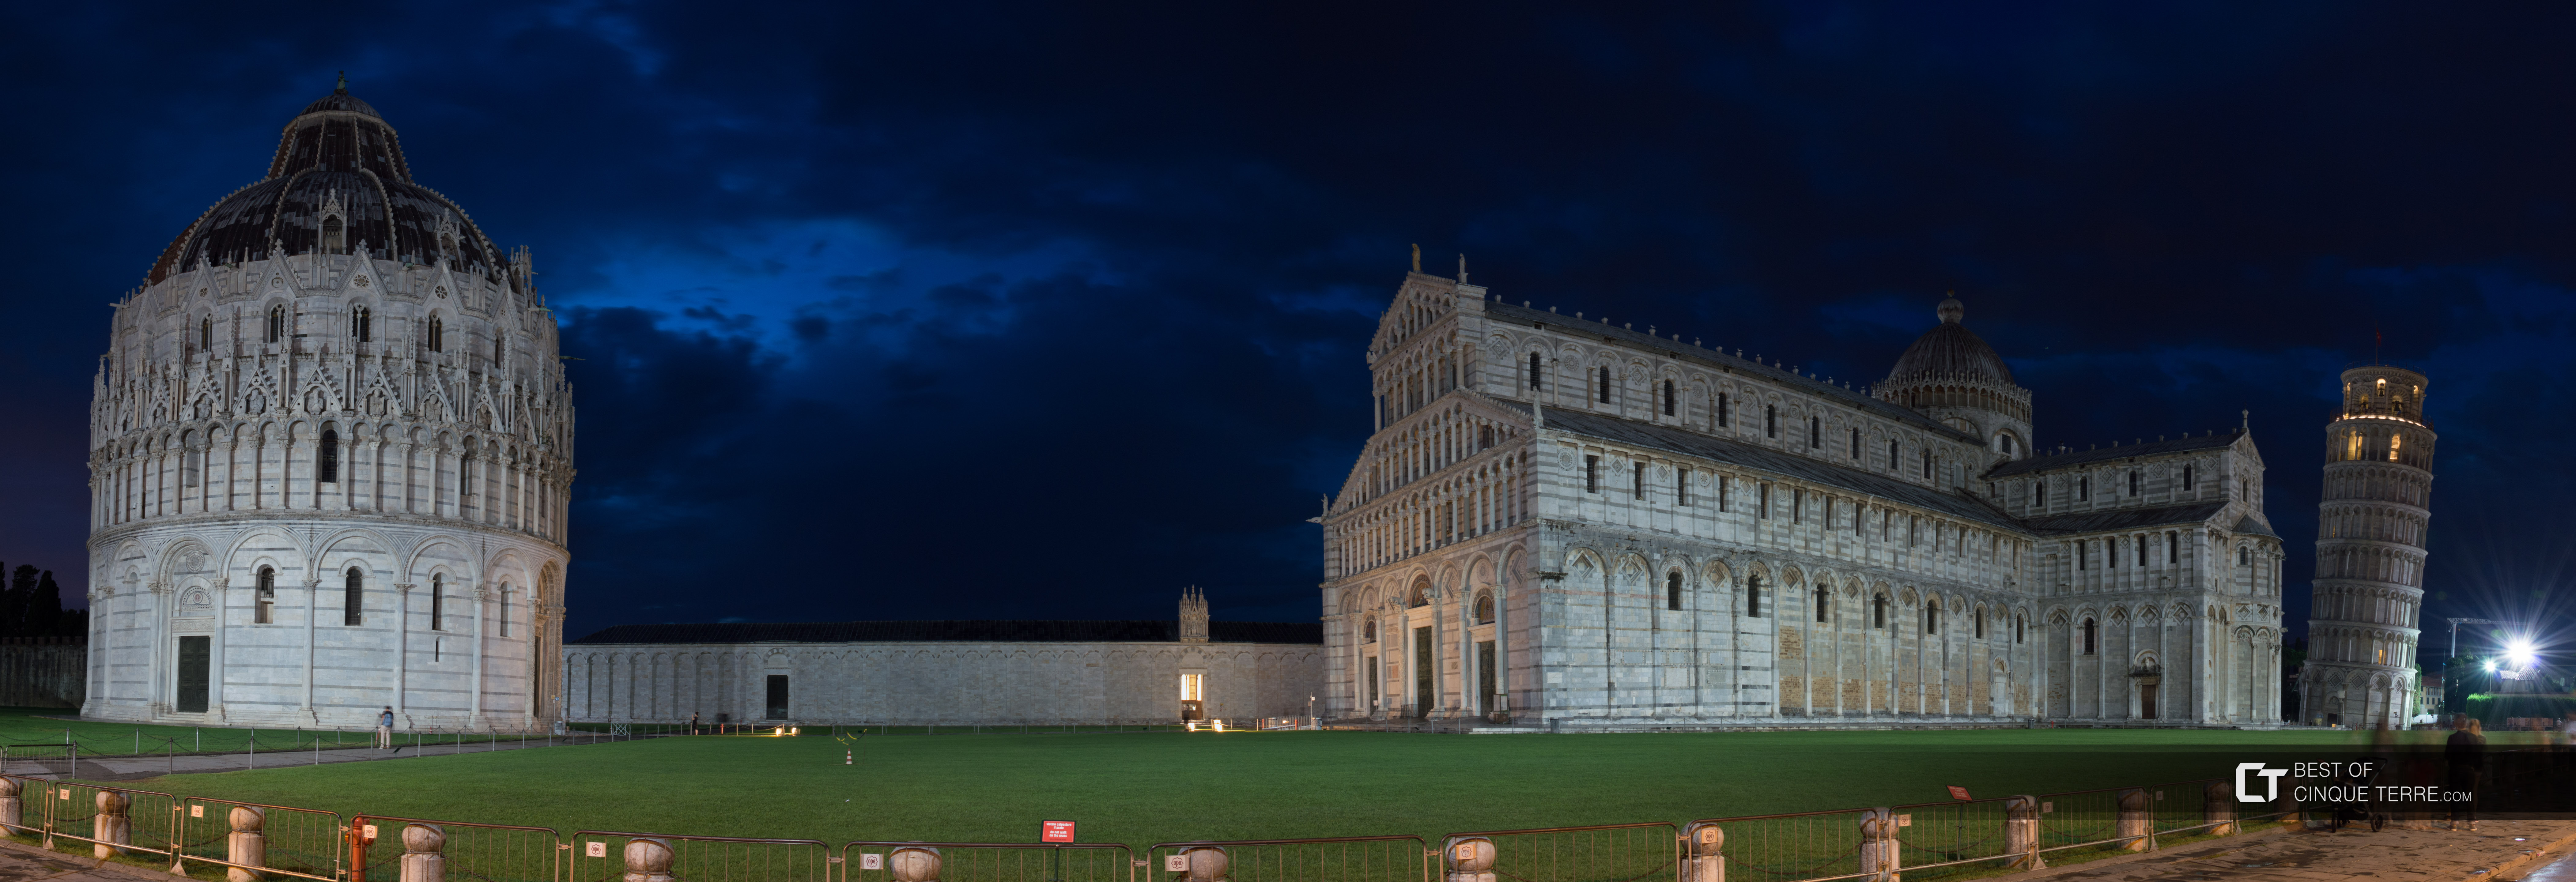 Plaza de los Milagros, panorama nocturno, Pisa, Italia